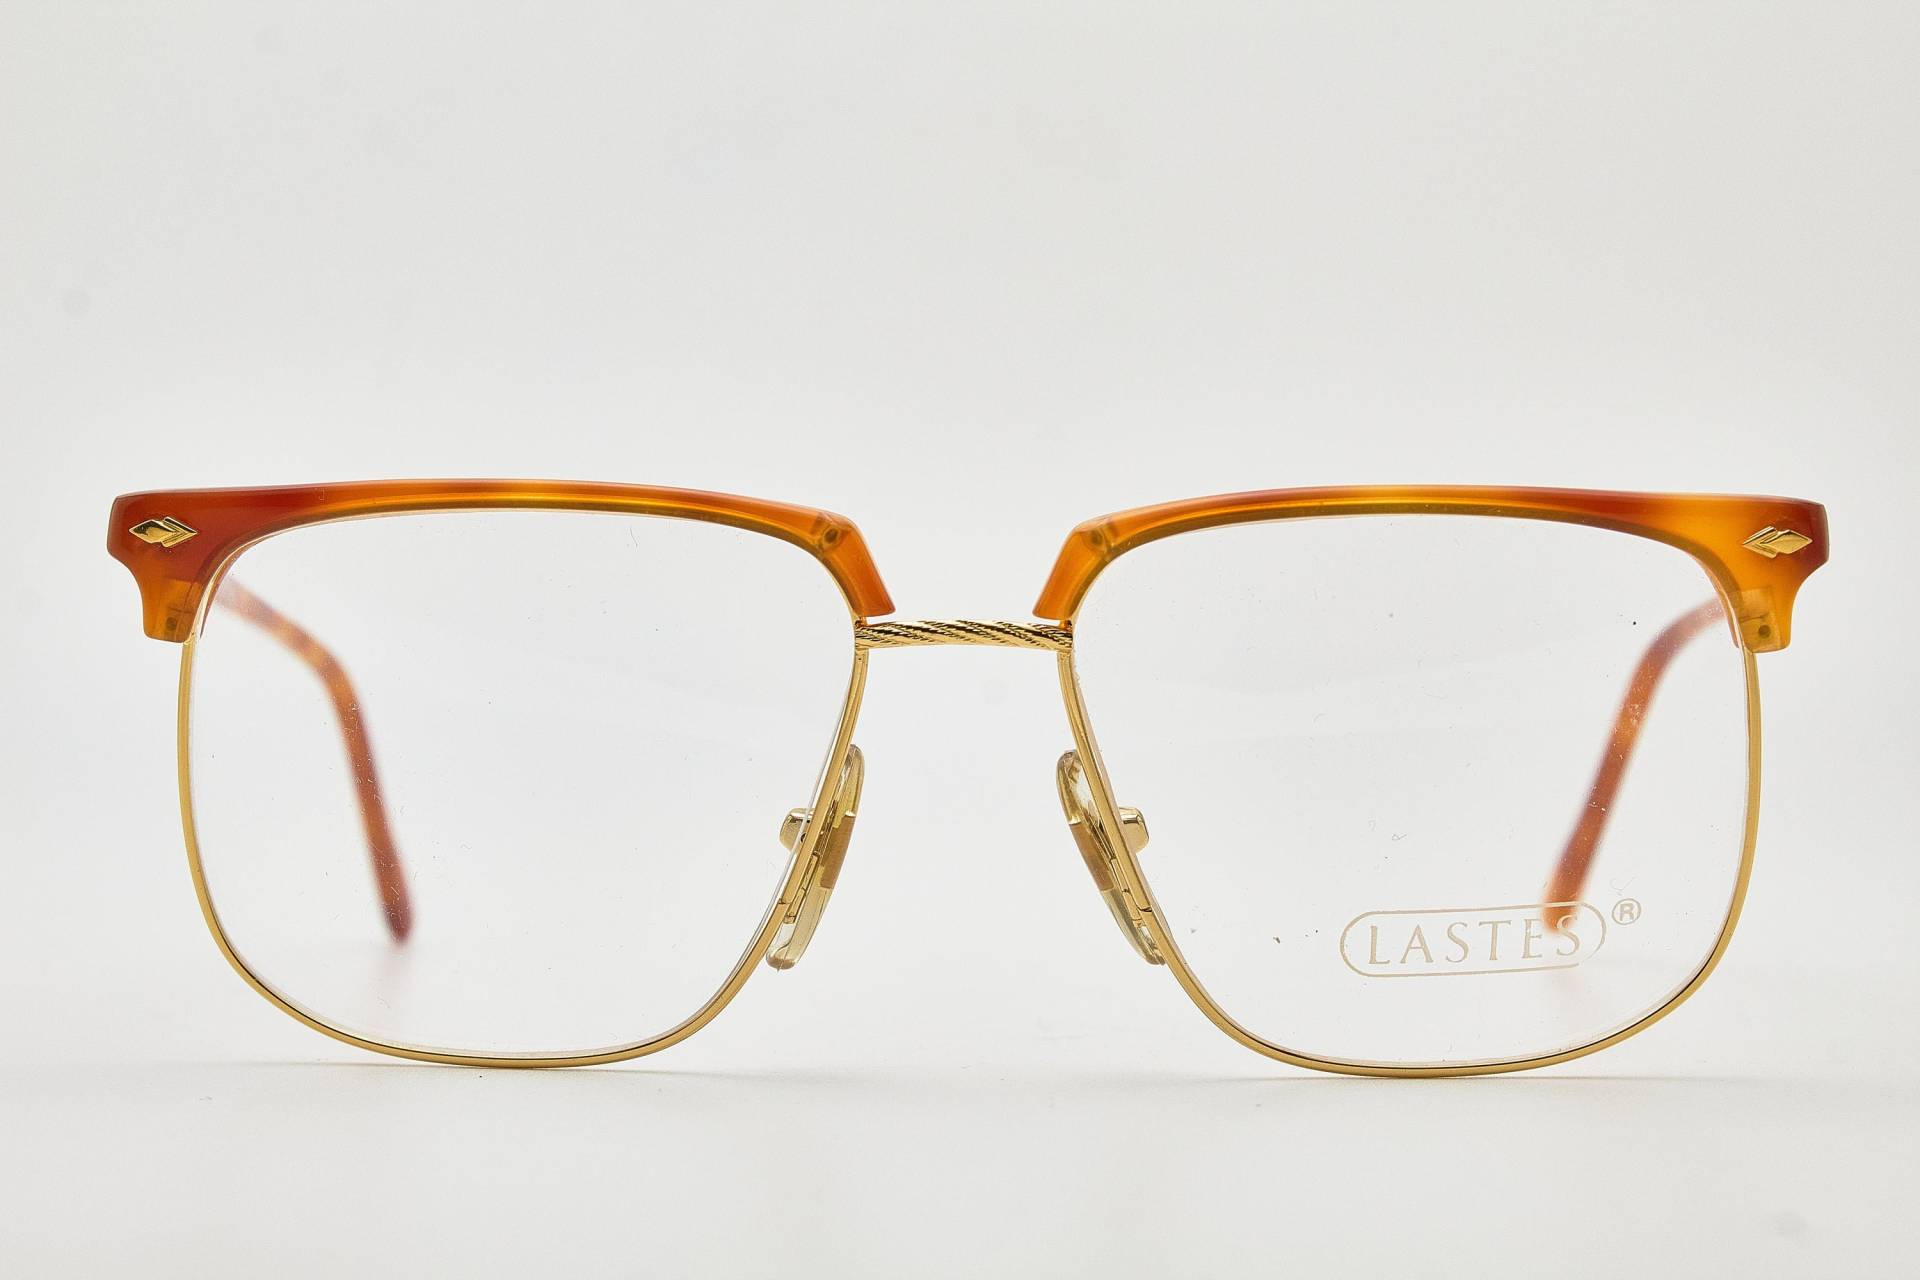 Zurück Zu 80Er Jahre Vintage Frau Oversize Brille Lastes M.liberty 2 C03 52-20 Braun/Gold Hipsters Mode Rahmen Cat-Eye Sonnenbrille von VintageGlassesVault